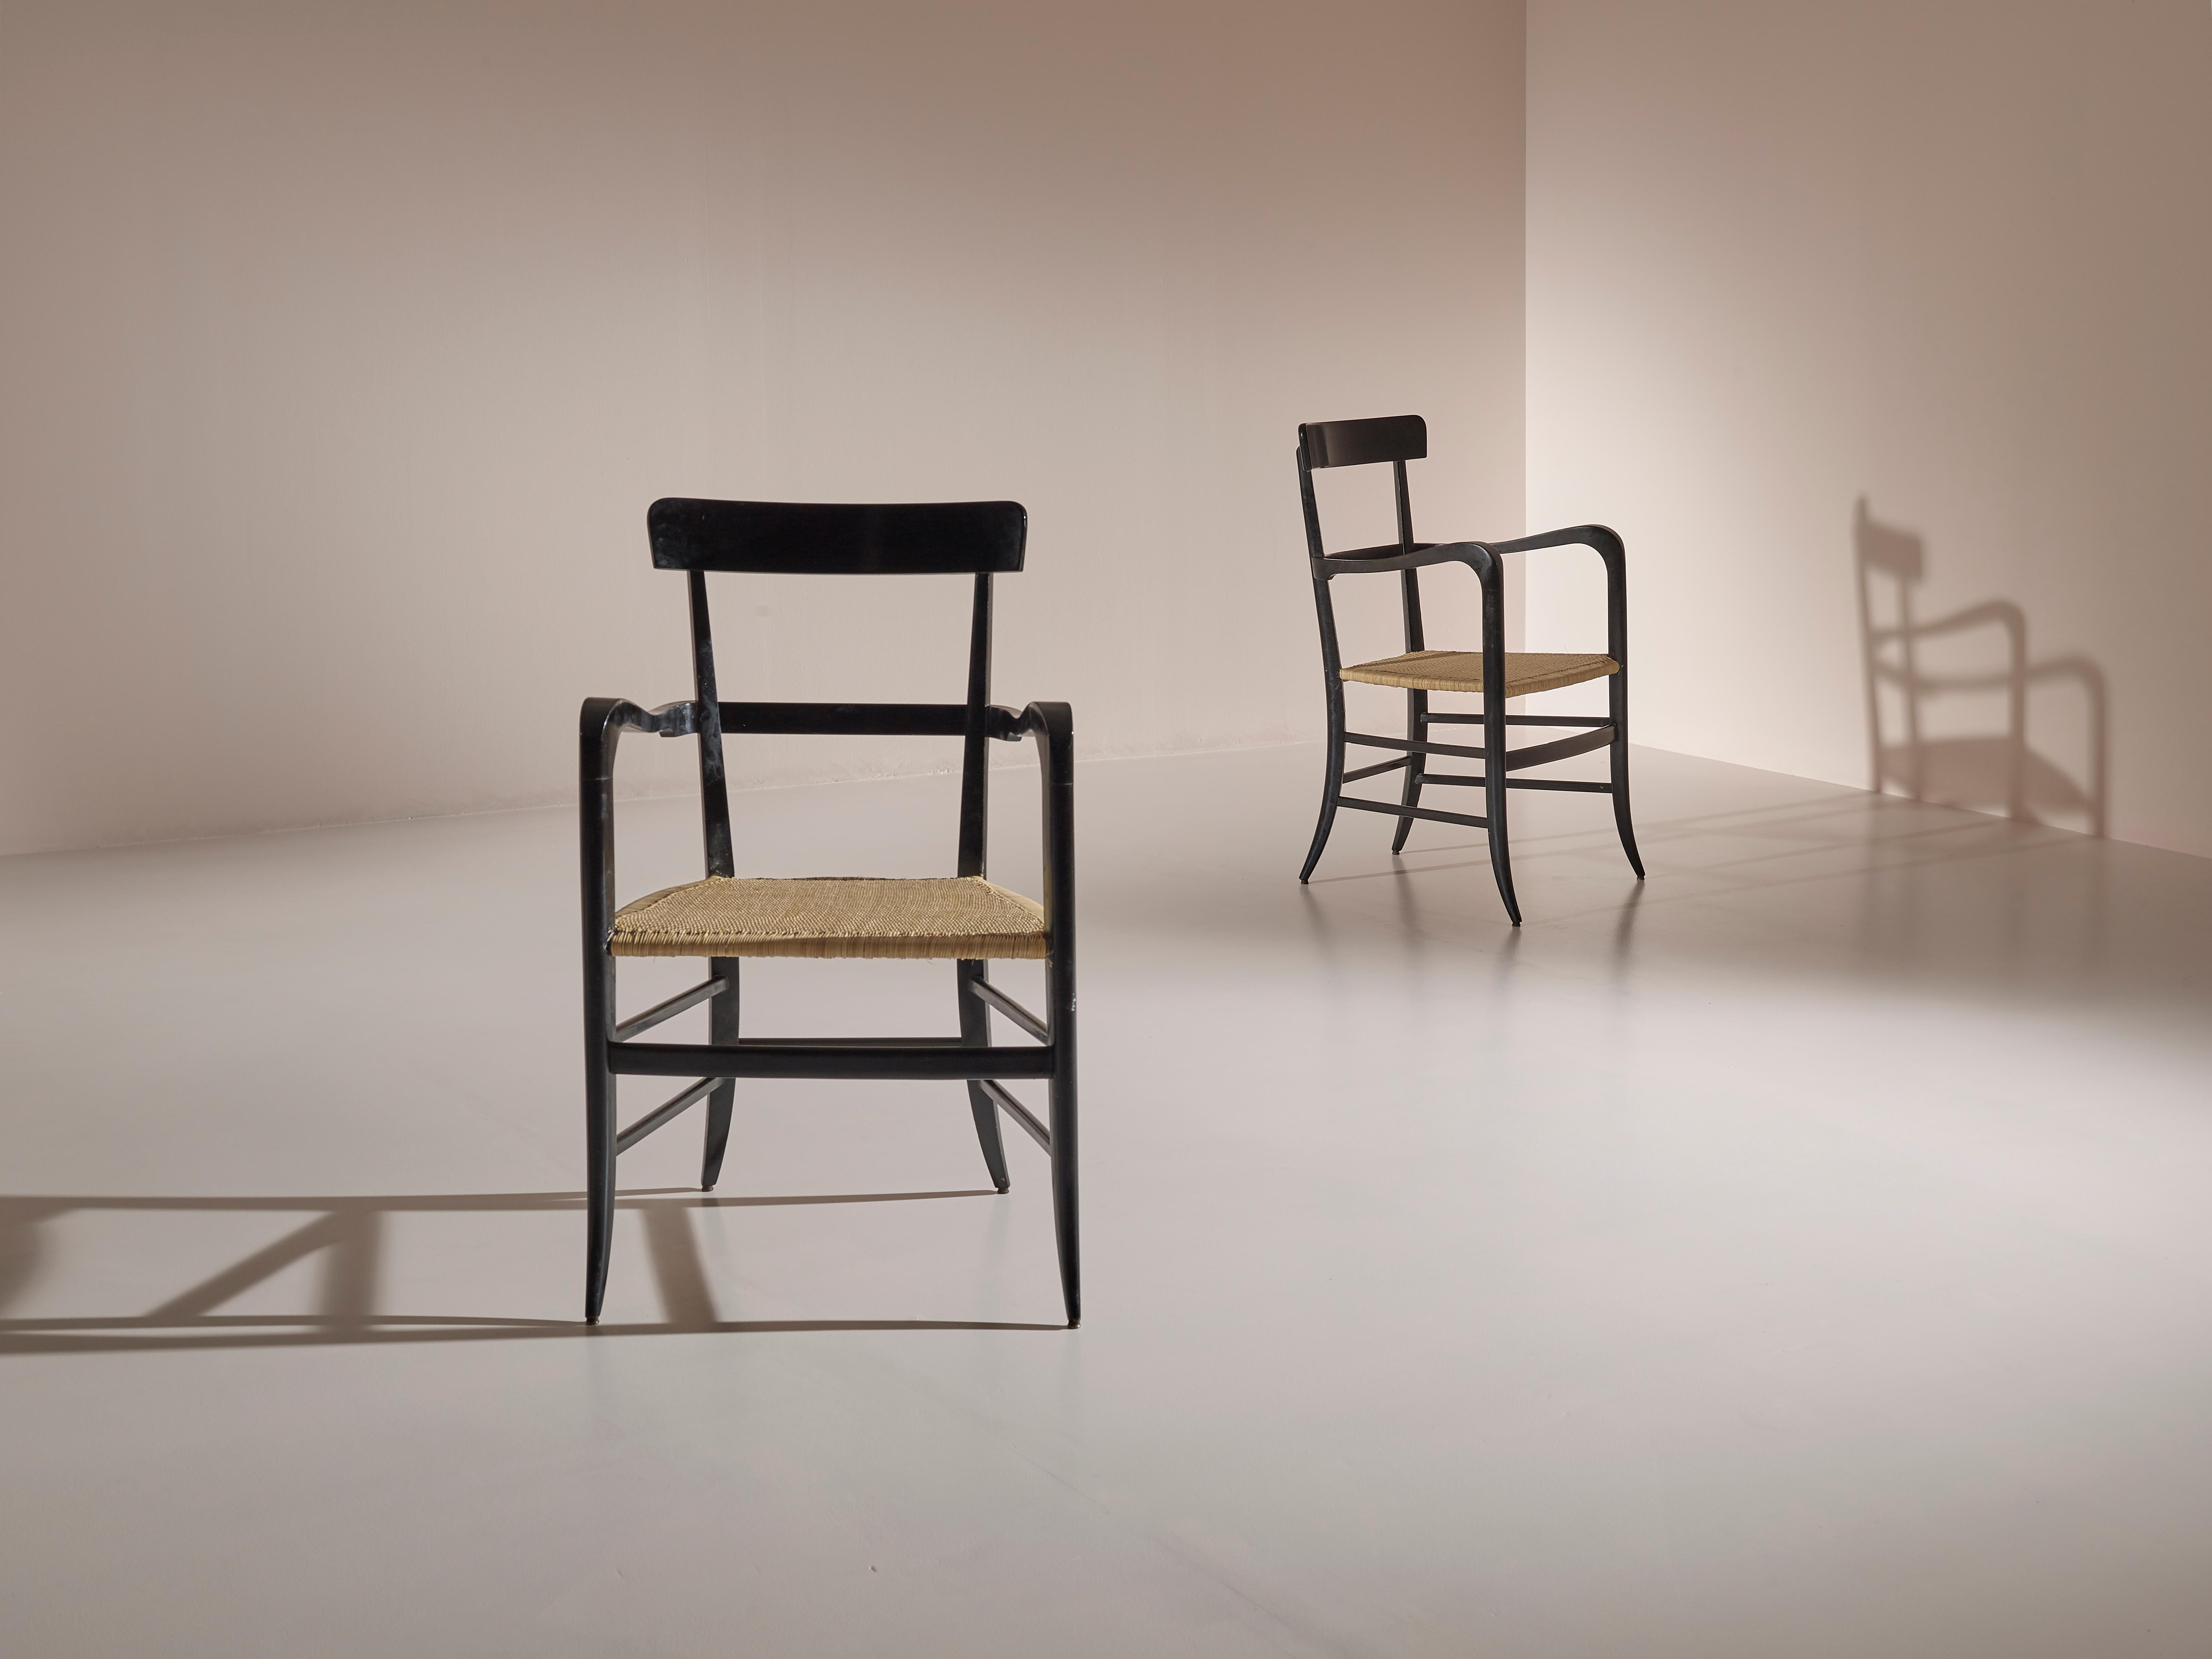 Rare et élégante paire de fauteuils Chiavari produite par l'ébéniste renouvelé Guido Chiappe au début des années 1960.
Ce modèle a été spécialement conçu pour le hall de l'hôtel Continental de Santa Margherita Ligure (Gênes) pour une production